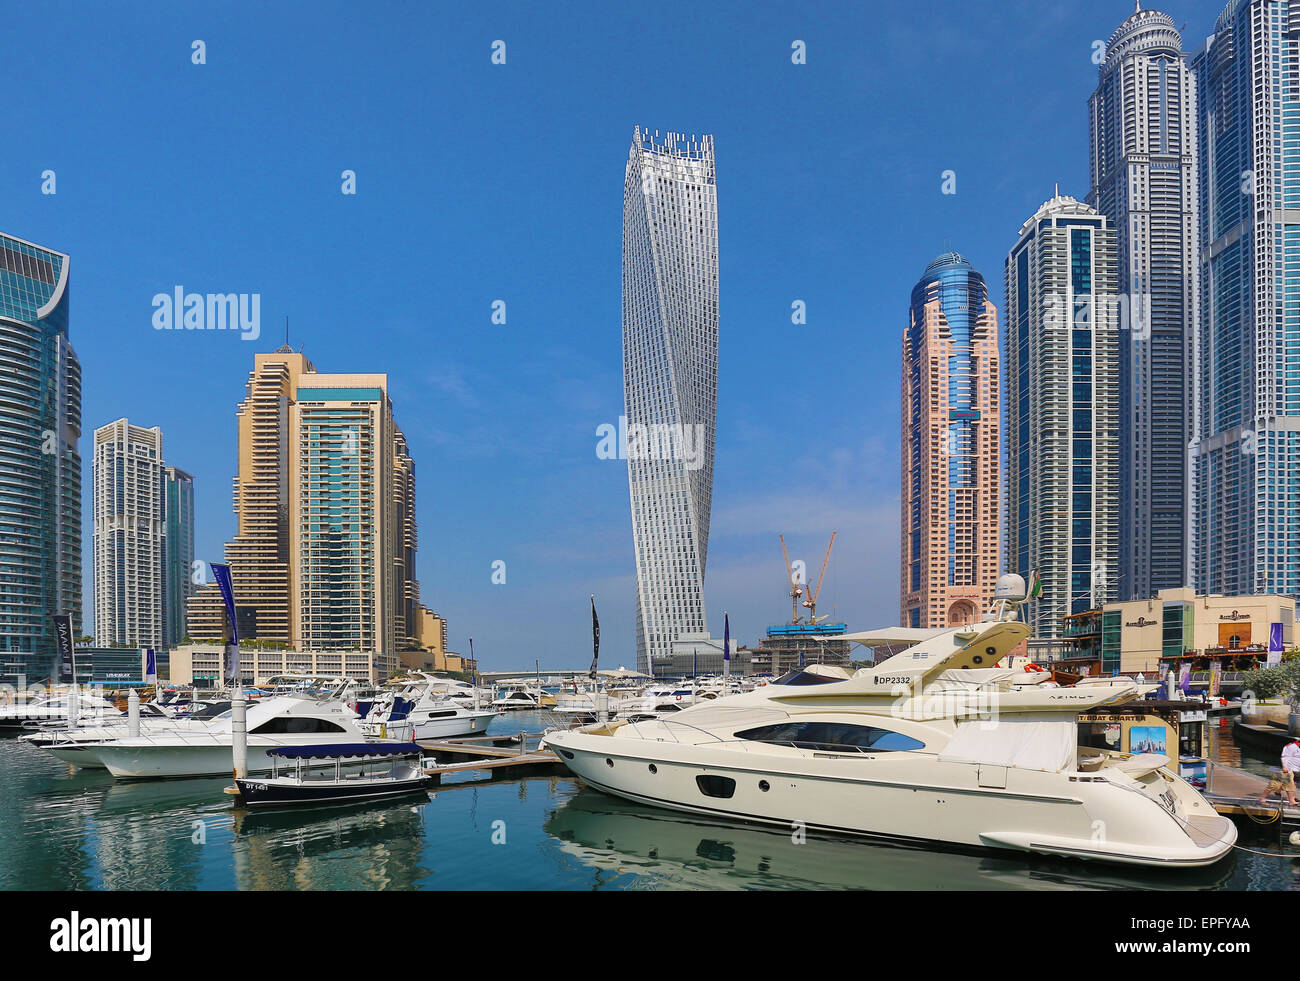 Dubai Marina Stock Photo